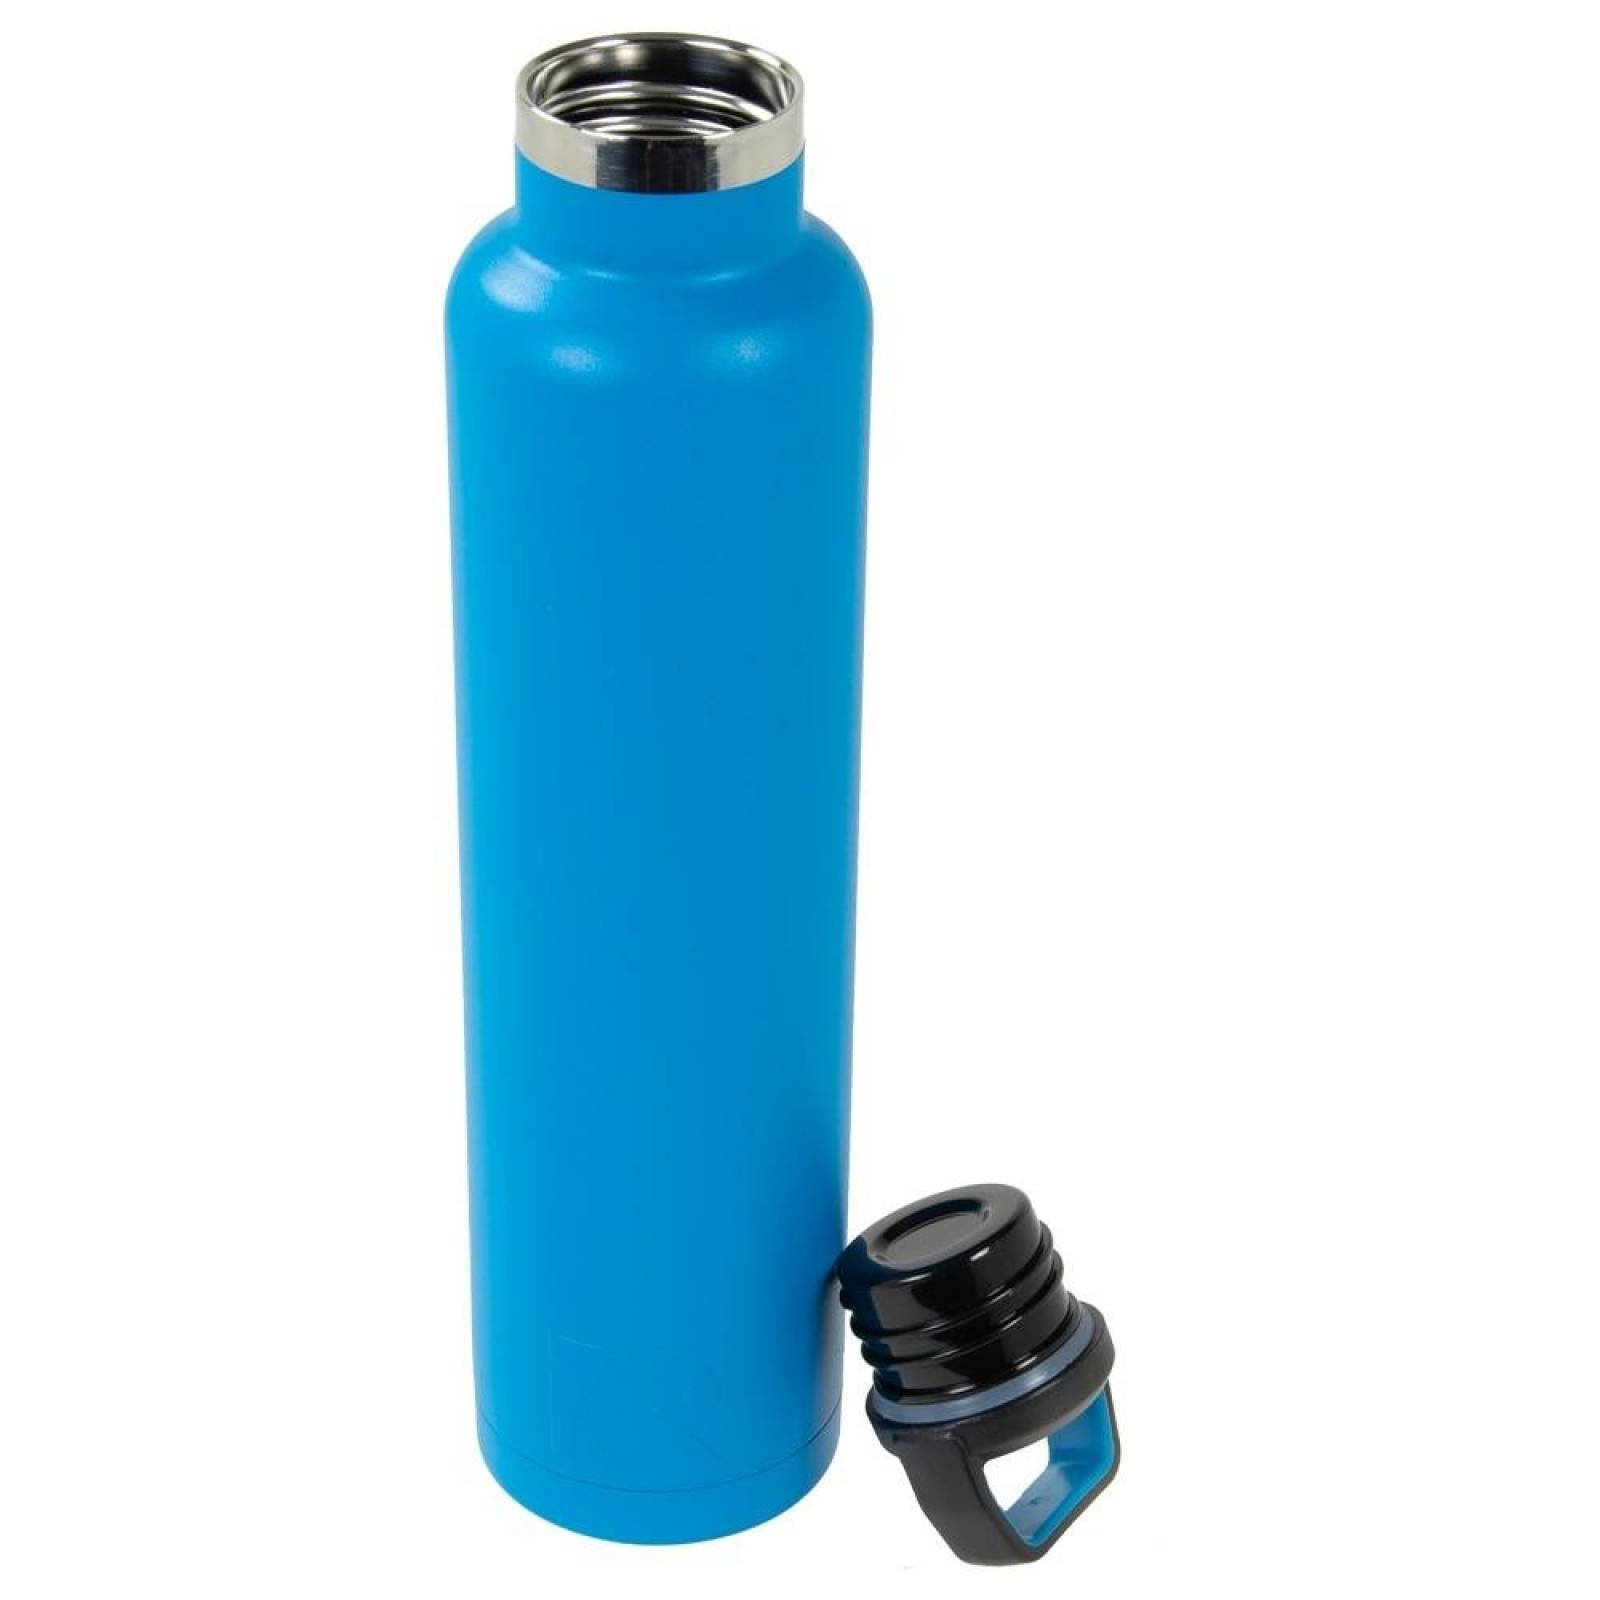 RTIC Water Bottle 26 oz. Polar Cap   1026